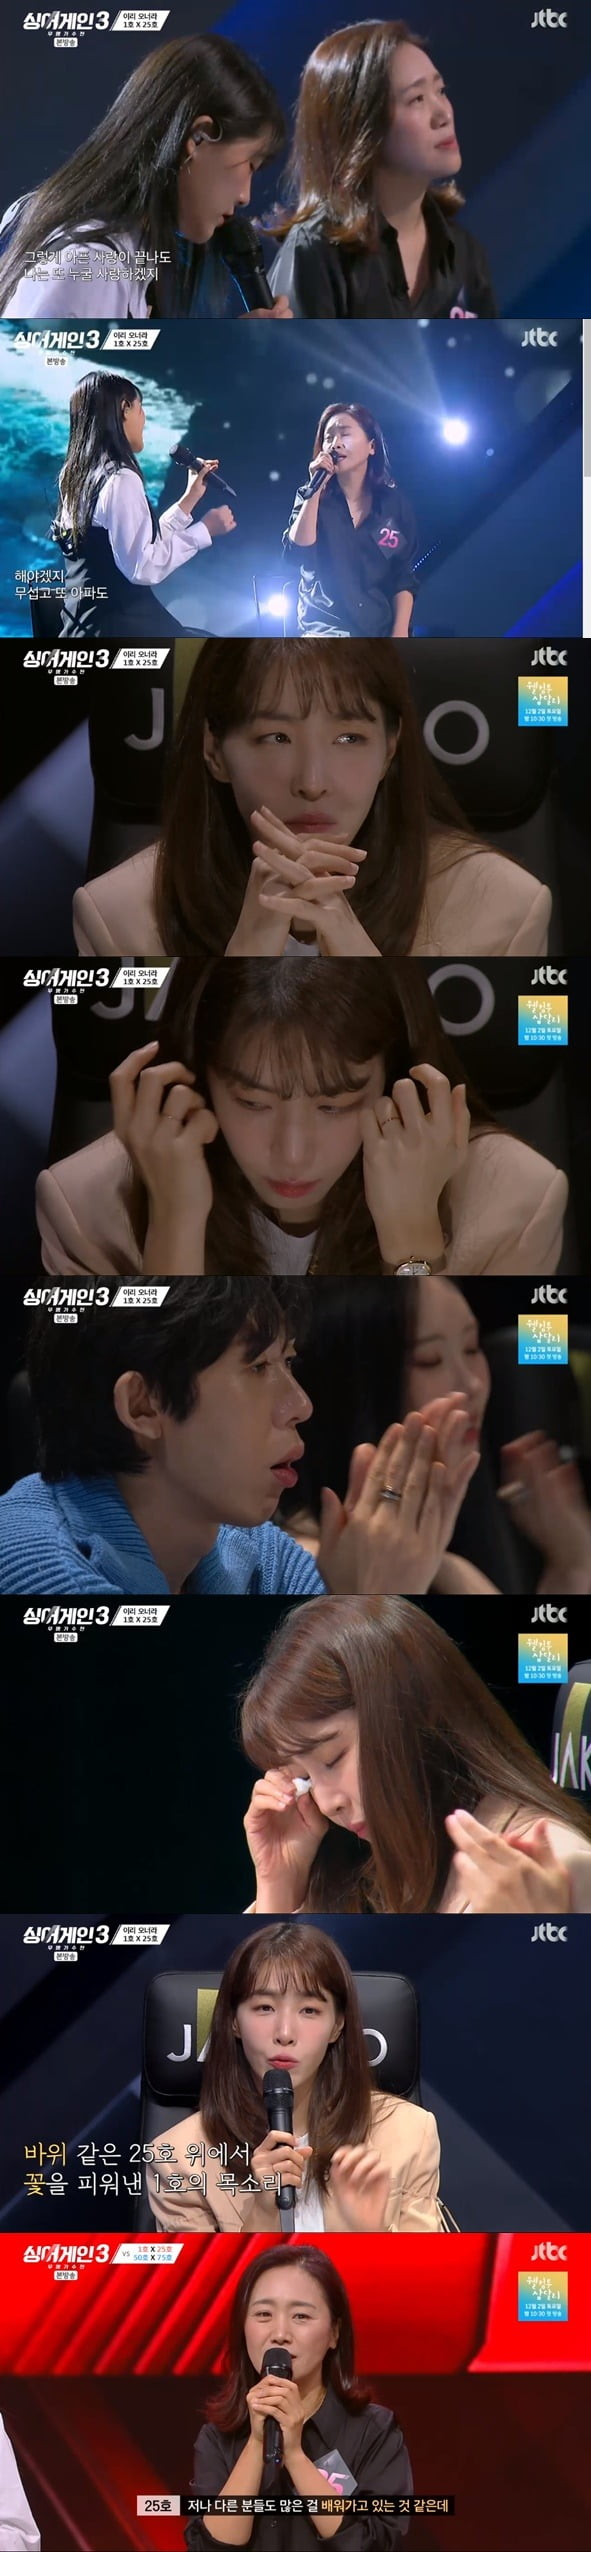 '싱어게인3' 김이나 눈물 왈칵 "죄송한데, 미친 것 같아요" 극찬